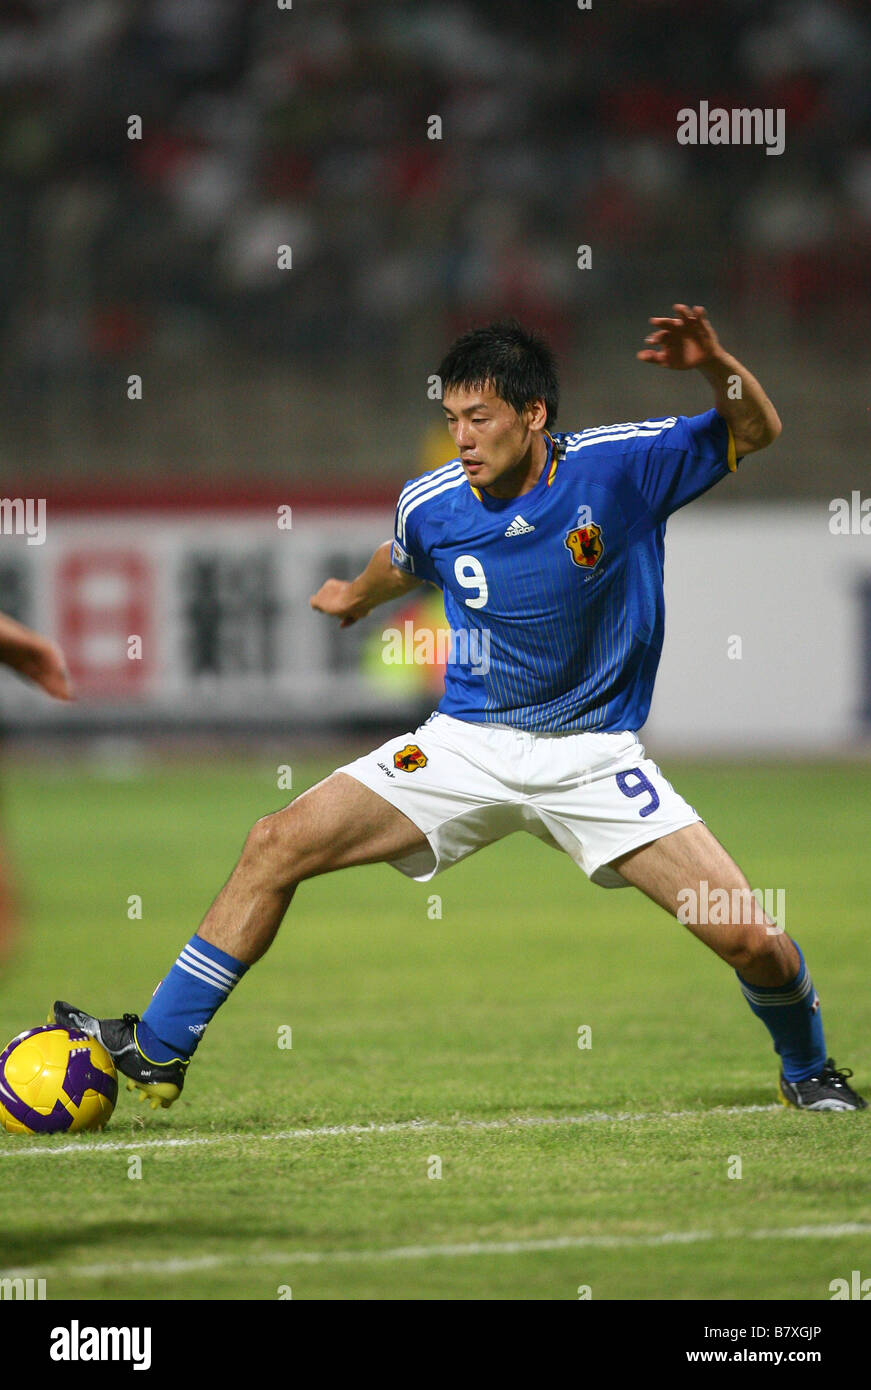 Daisuke Matsui JPN 6 SEPTEMBRE 2008 Coupe du Monde de Football FIFA 2010 ronde finale asiatique de qualificatifs entre Bahreïn 2 3 Japon à Bahreïn Manama Bahrain National Stadium Photo de YUTAKA AFLO SPORT 1040 Banque D'Images